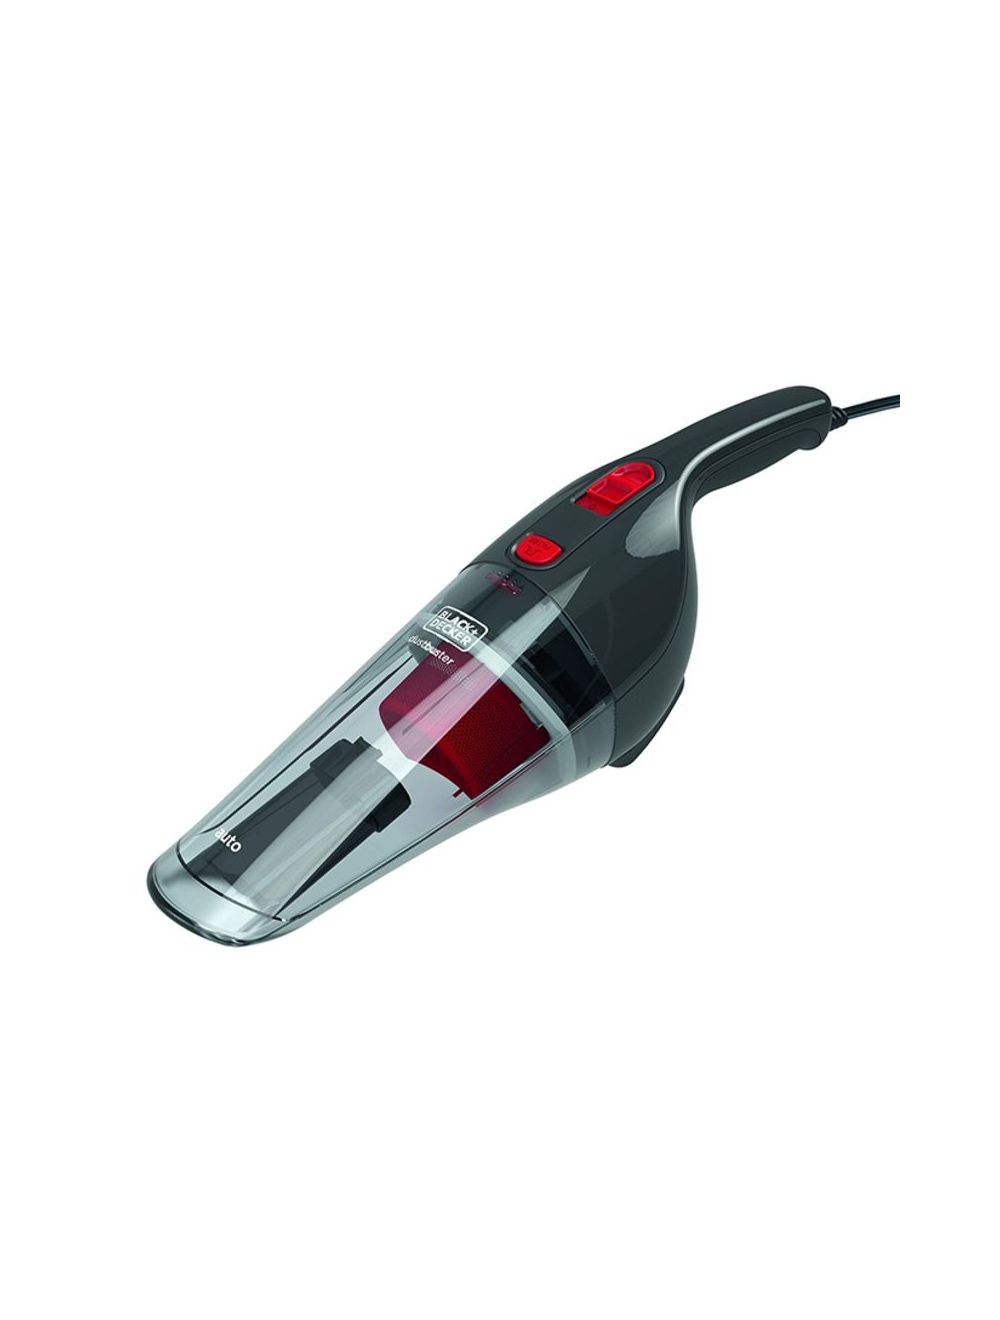 Black+Decker 12VDC EPP Auto Handheld Vacuum Cleaner with Car Power Socket Adapter, NV1200AV-B5